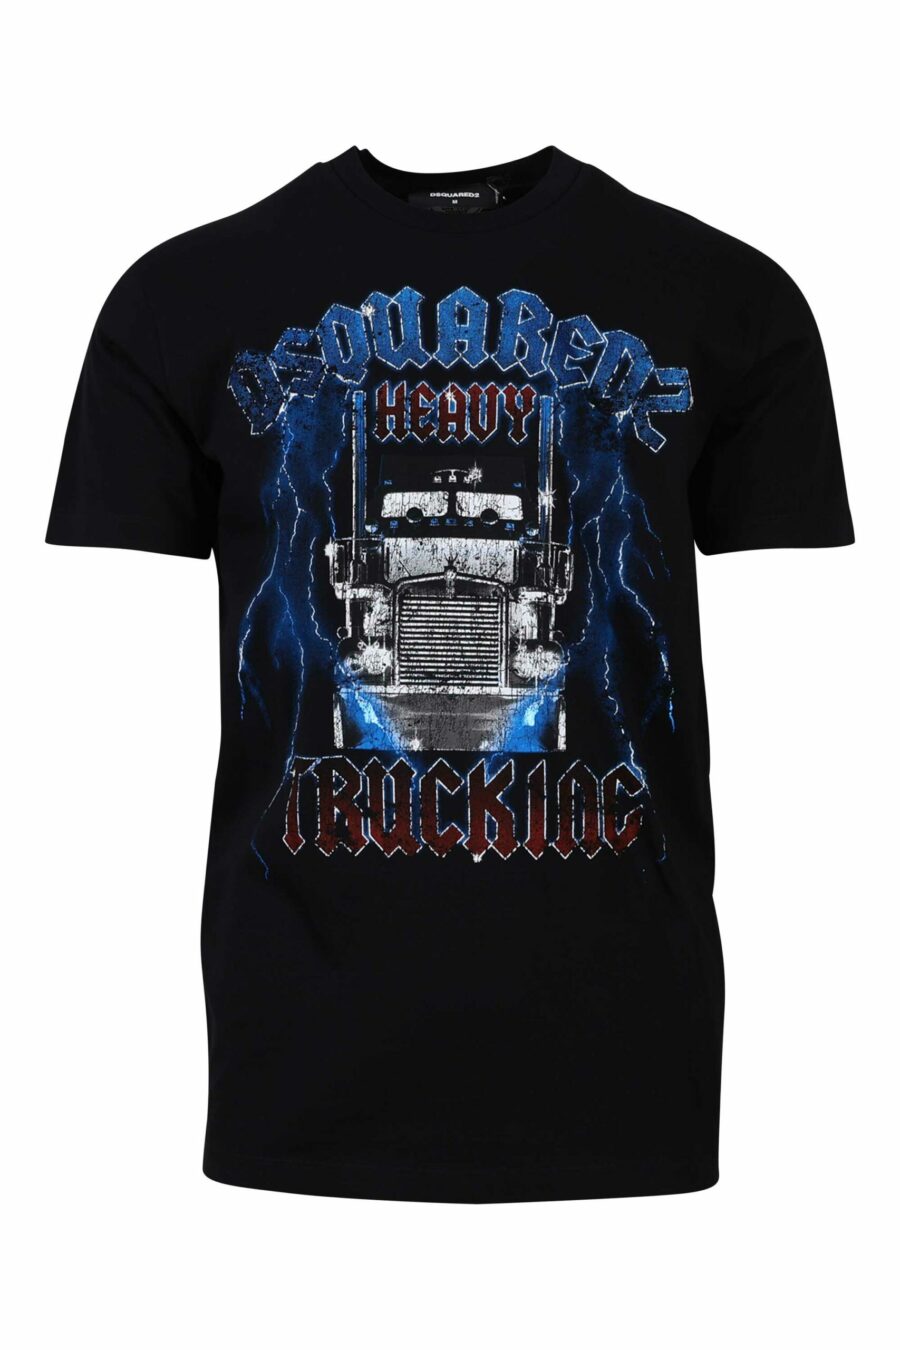 Schwarzes T-Shirt mit blauem und rotem Gothic-Maxilogo - 8054148085940 1 skaliert